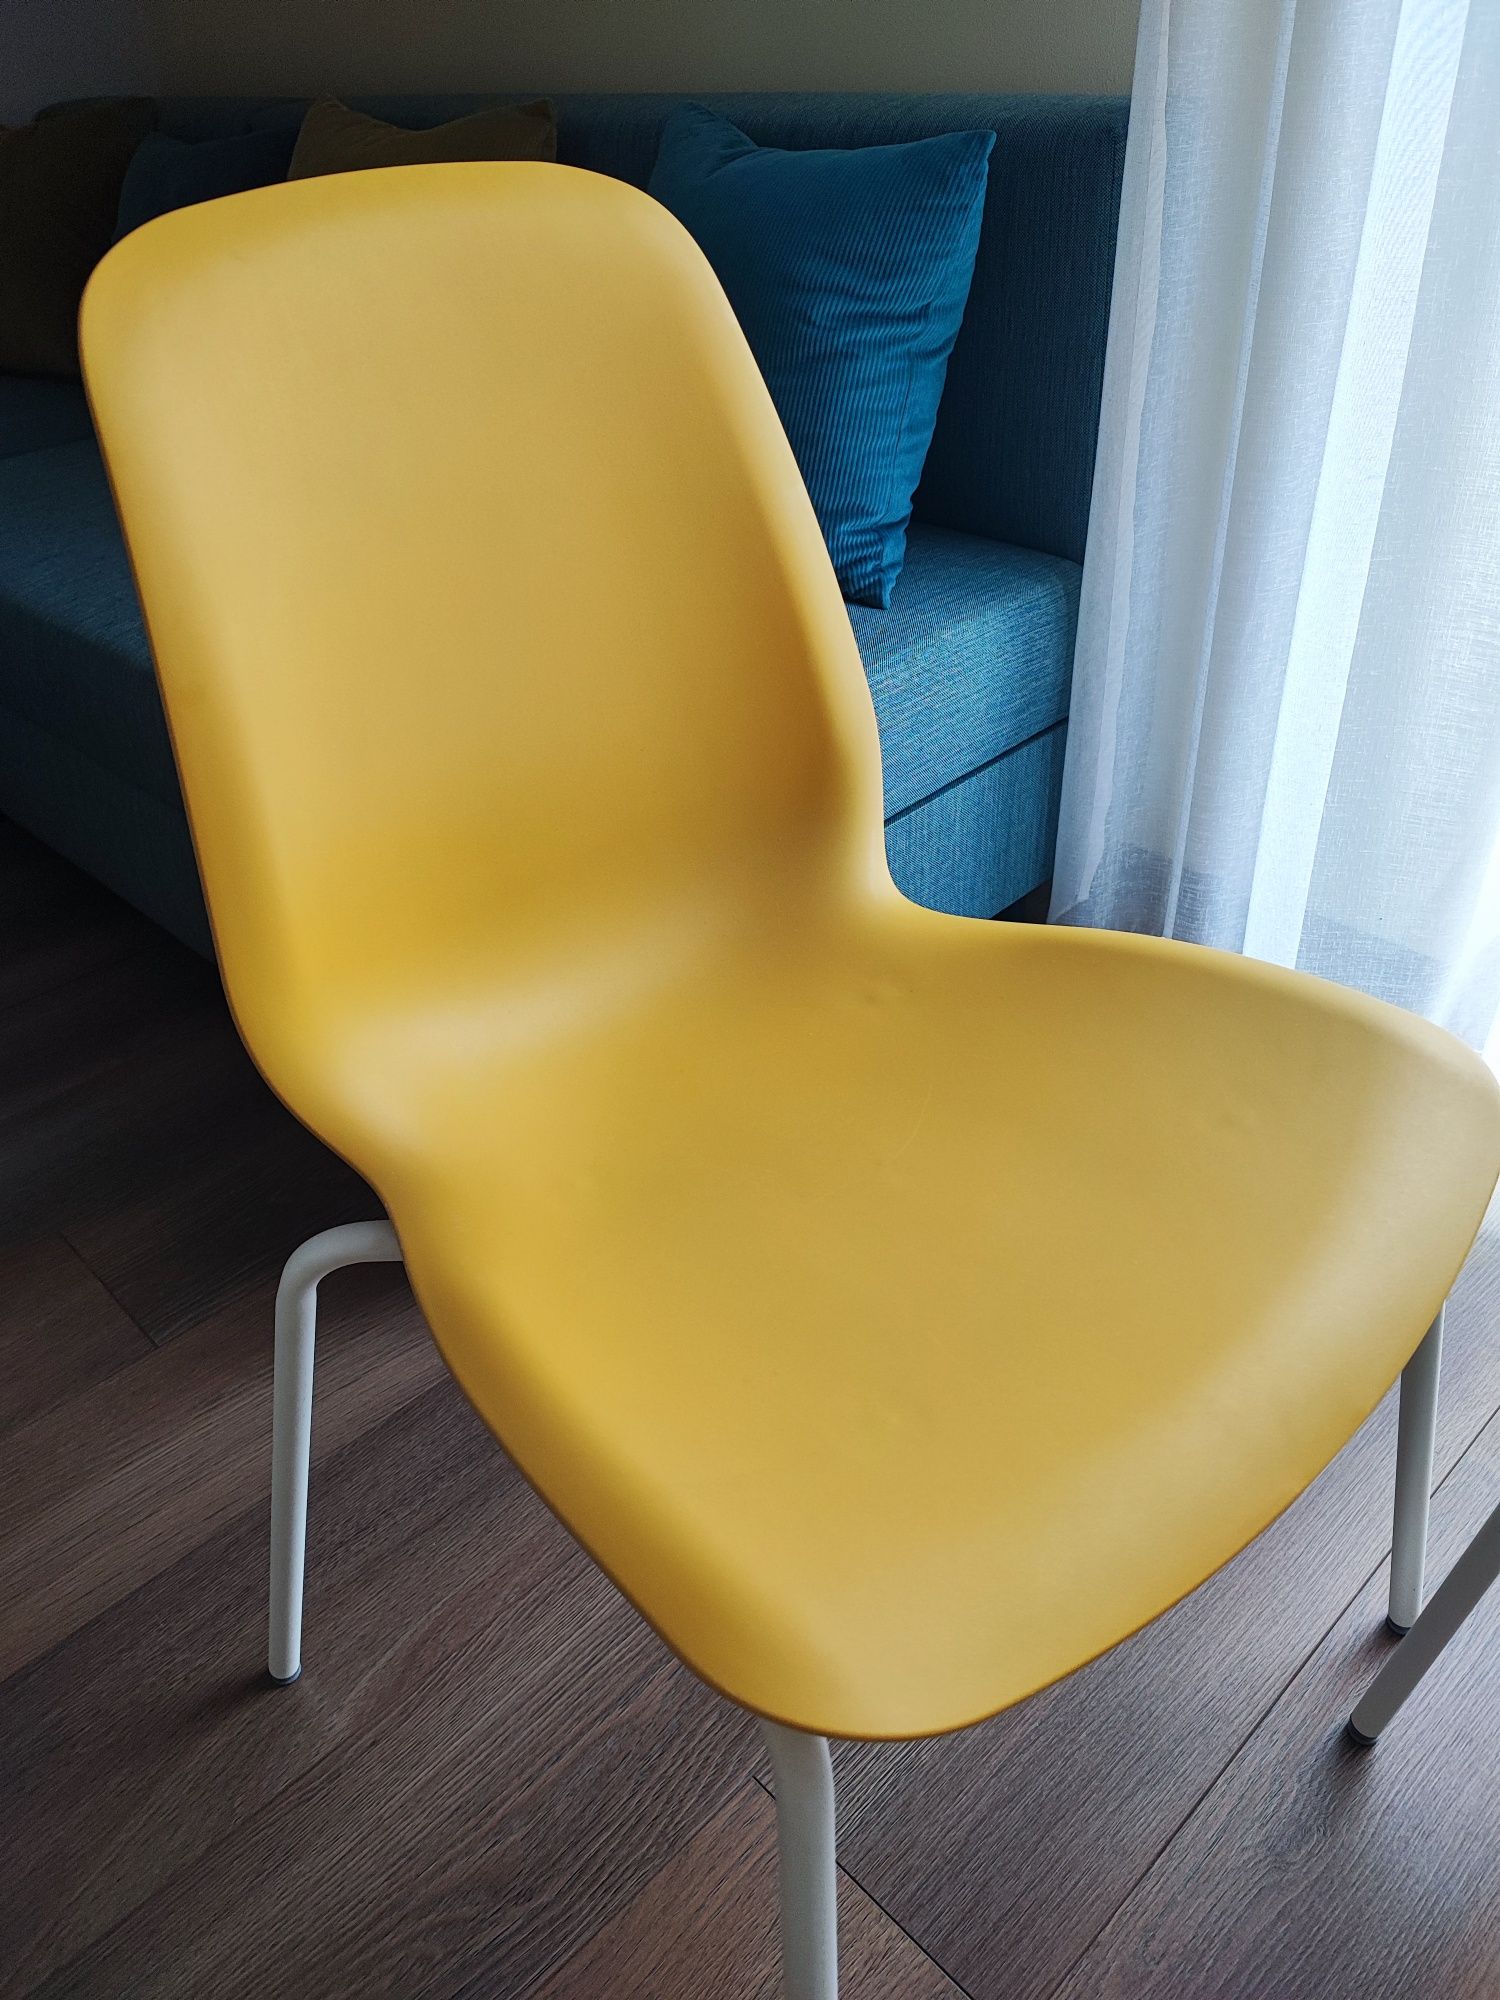 Ikea krzesło Leifarne - 4szt.